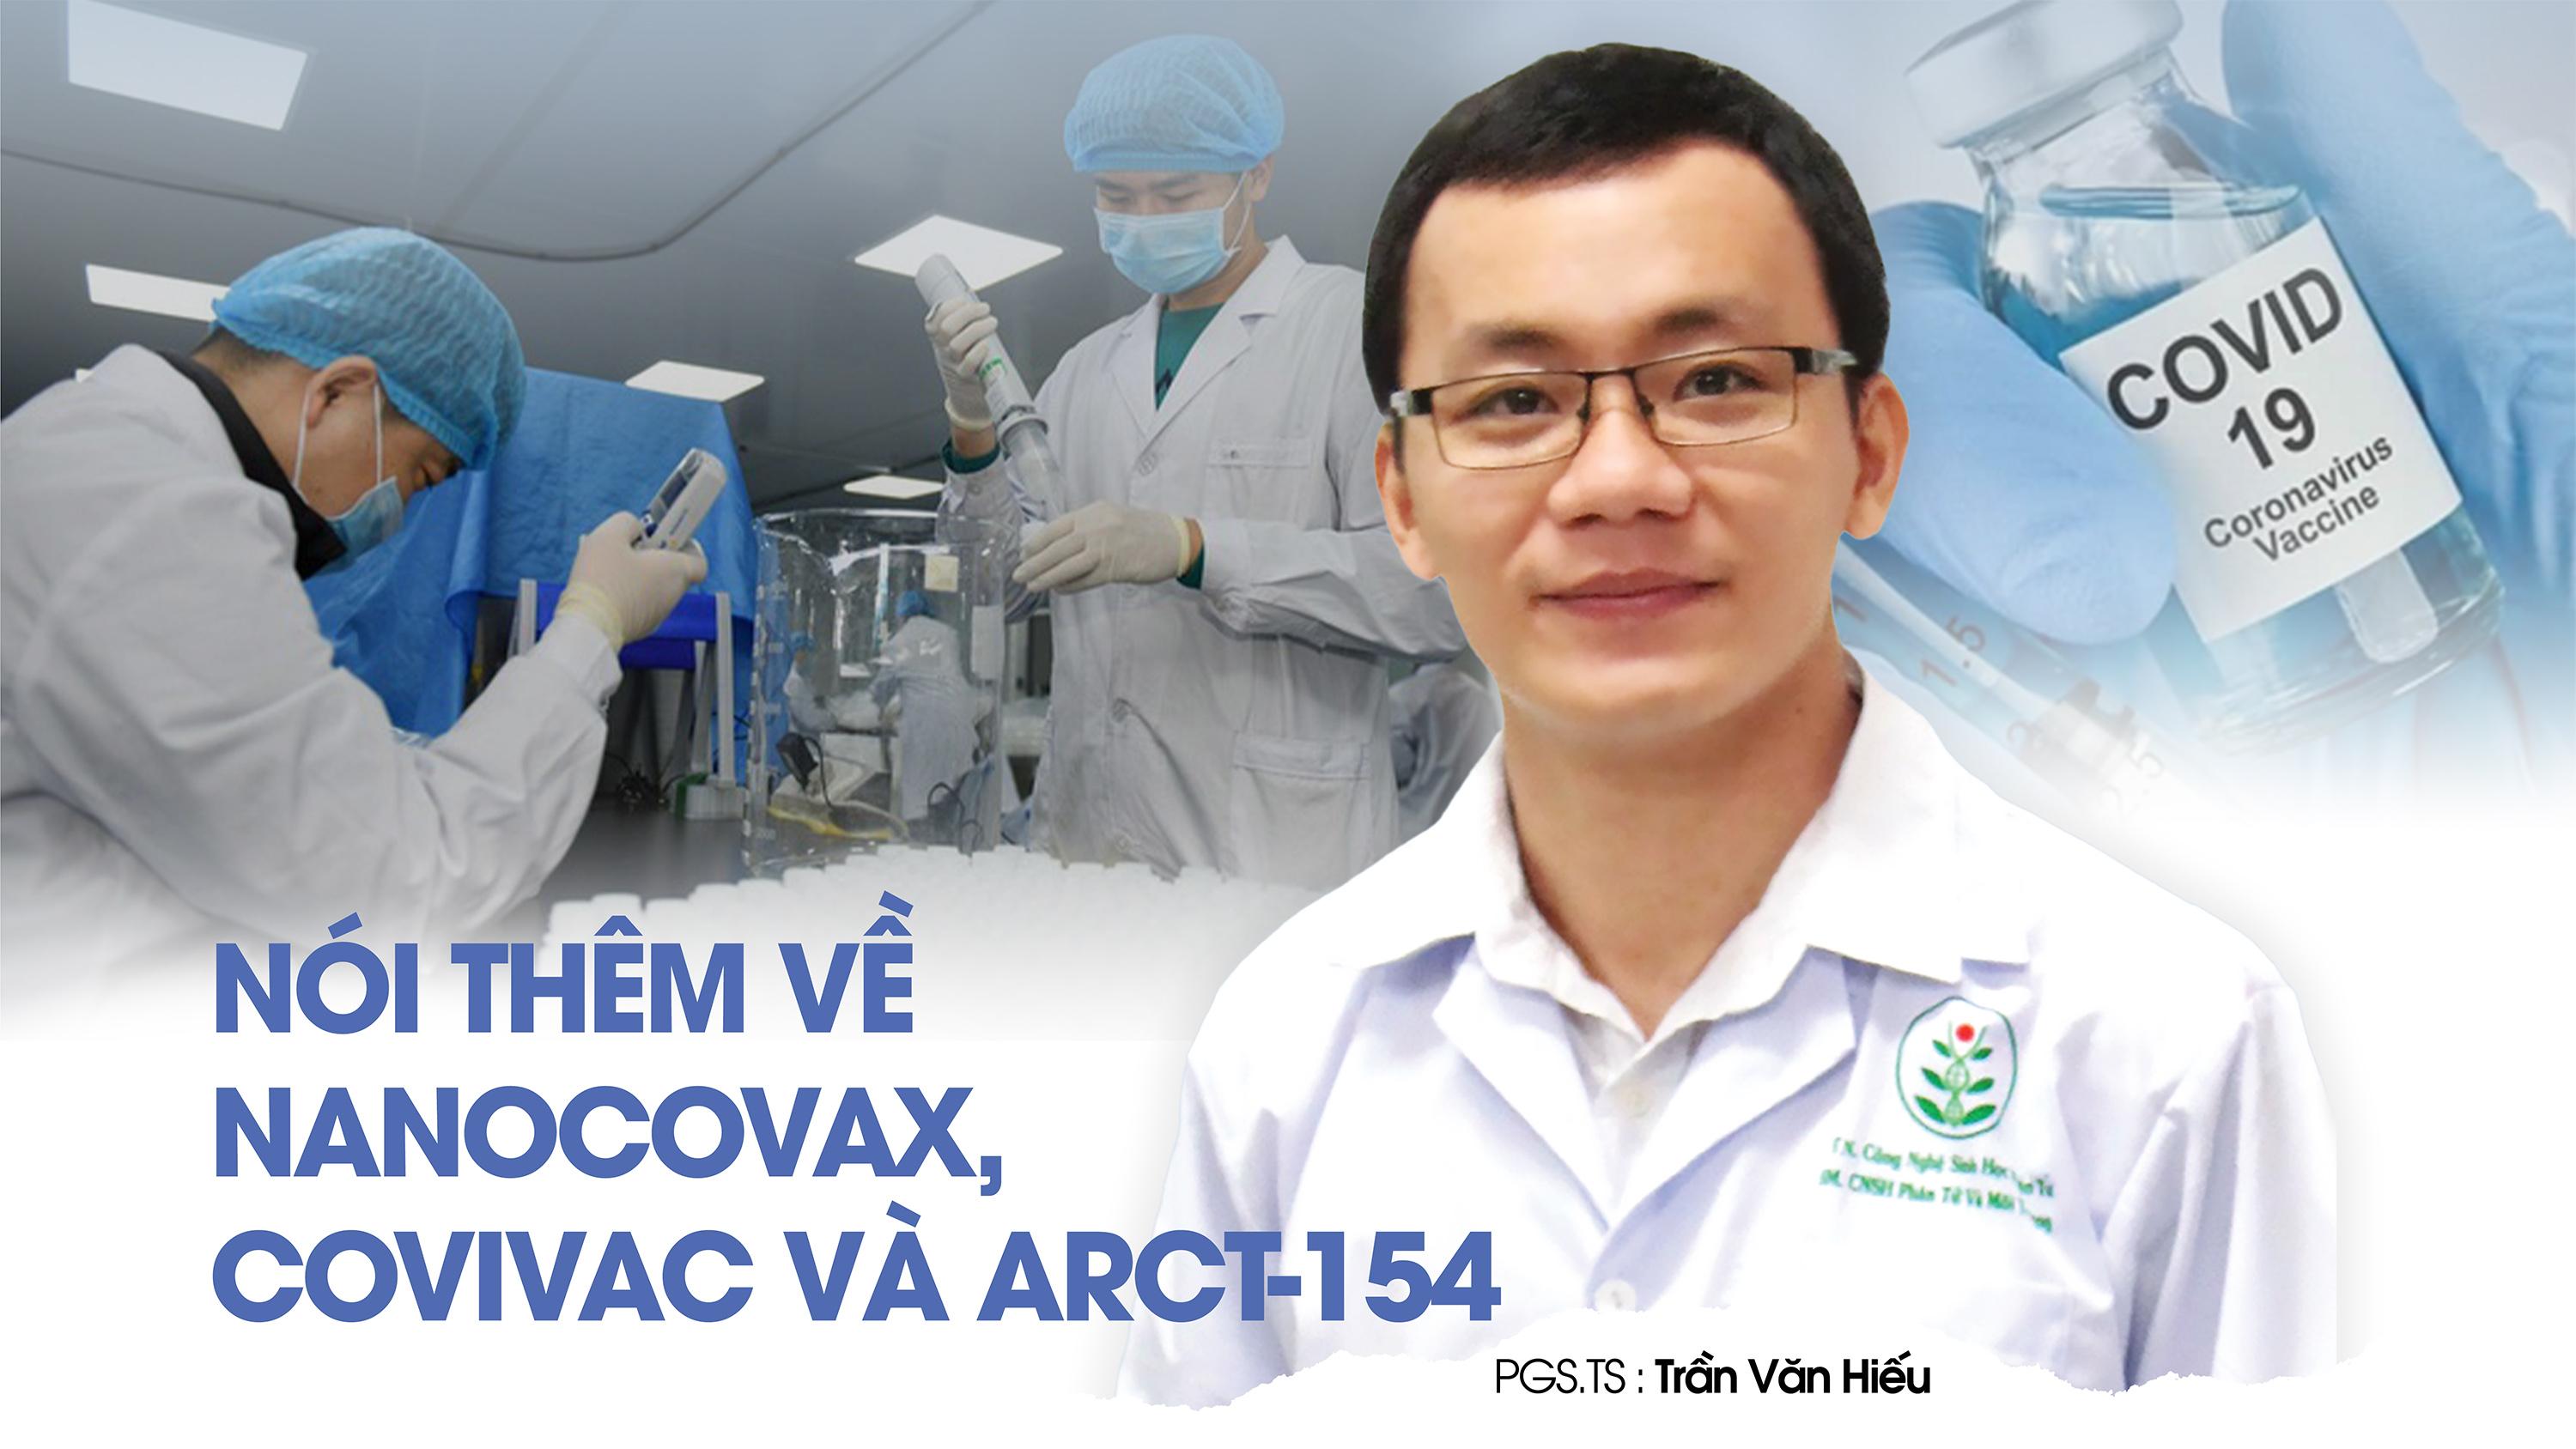 PGS.TS. Trần Văn Hiếu, chuyên gia virus và miễn dịch của Trường Đại học Khoa học Tự nhiên, ĐHQG Tp.HCM